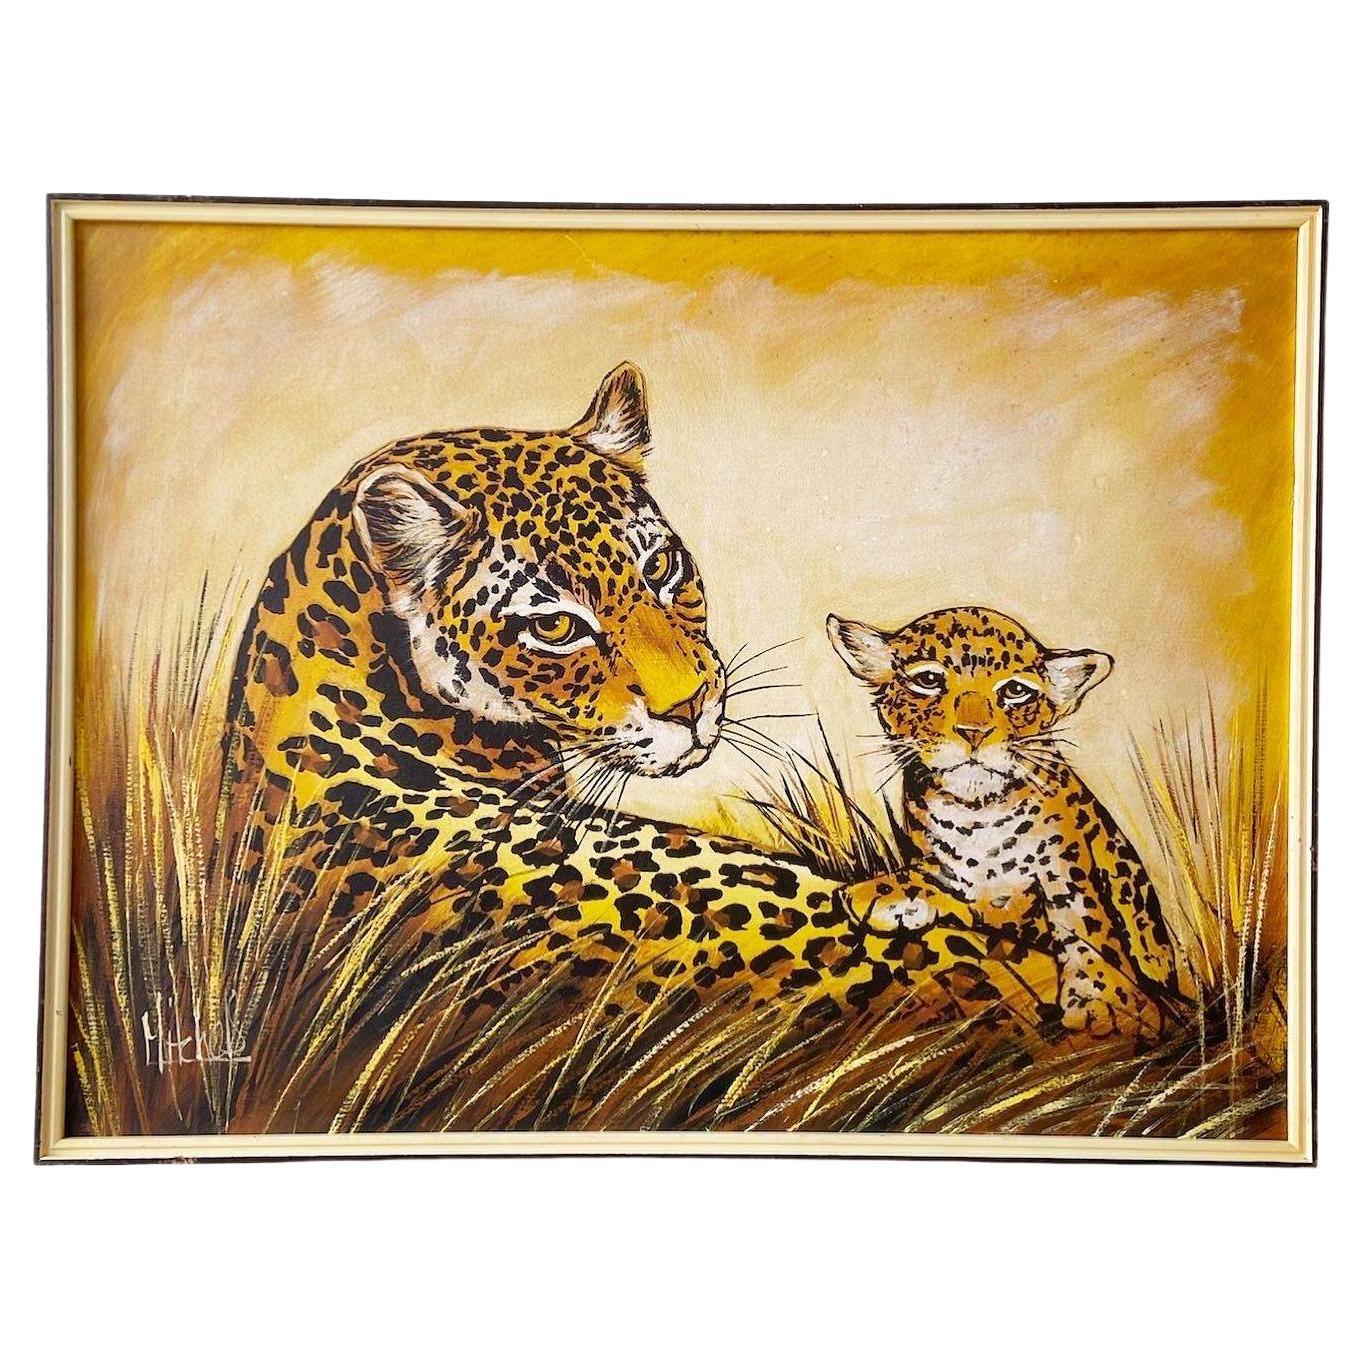 Gerahmtes und signiertes Vintage-Ölgemälde von Geparden